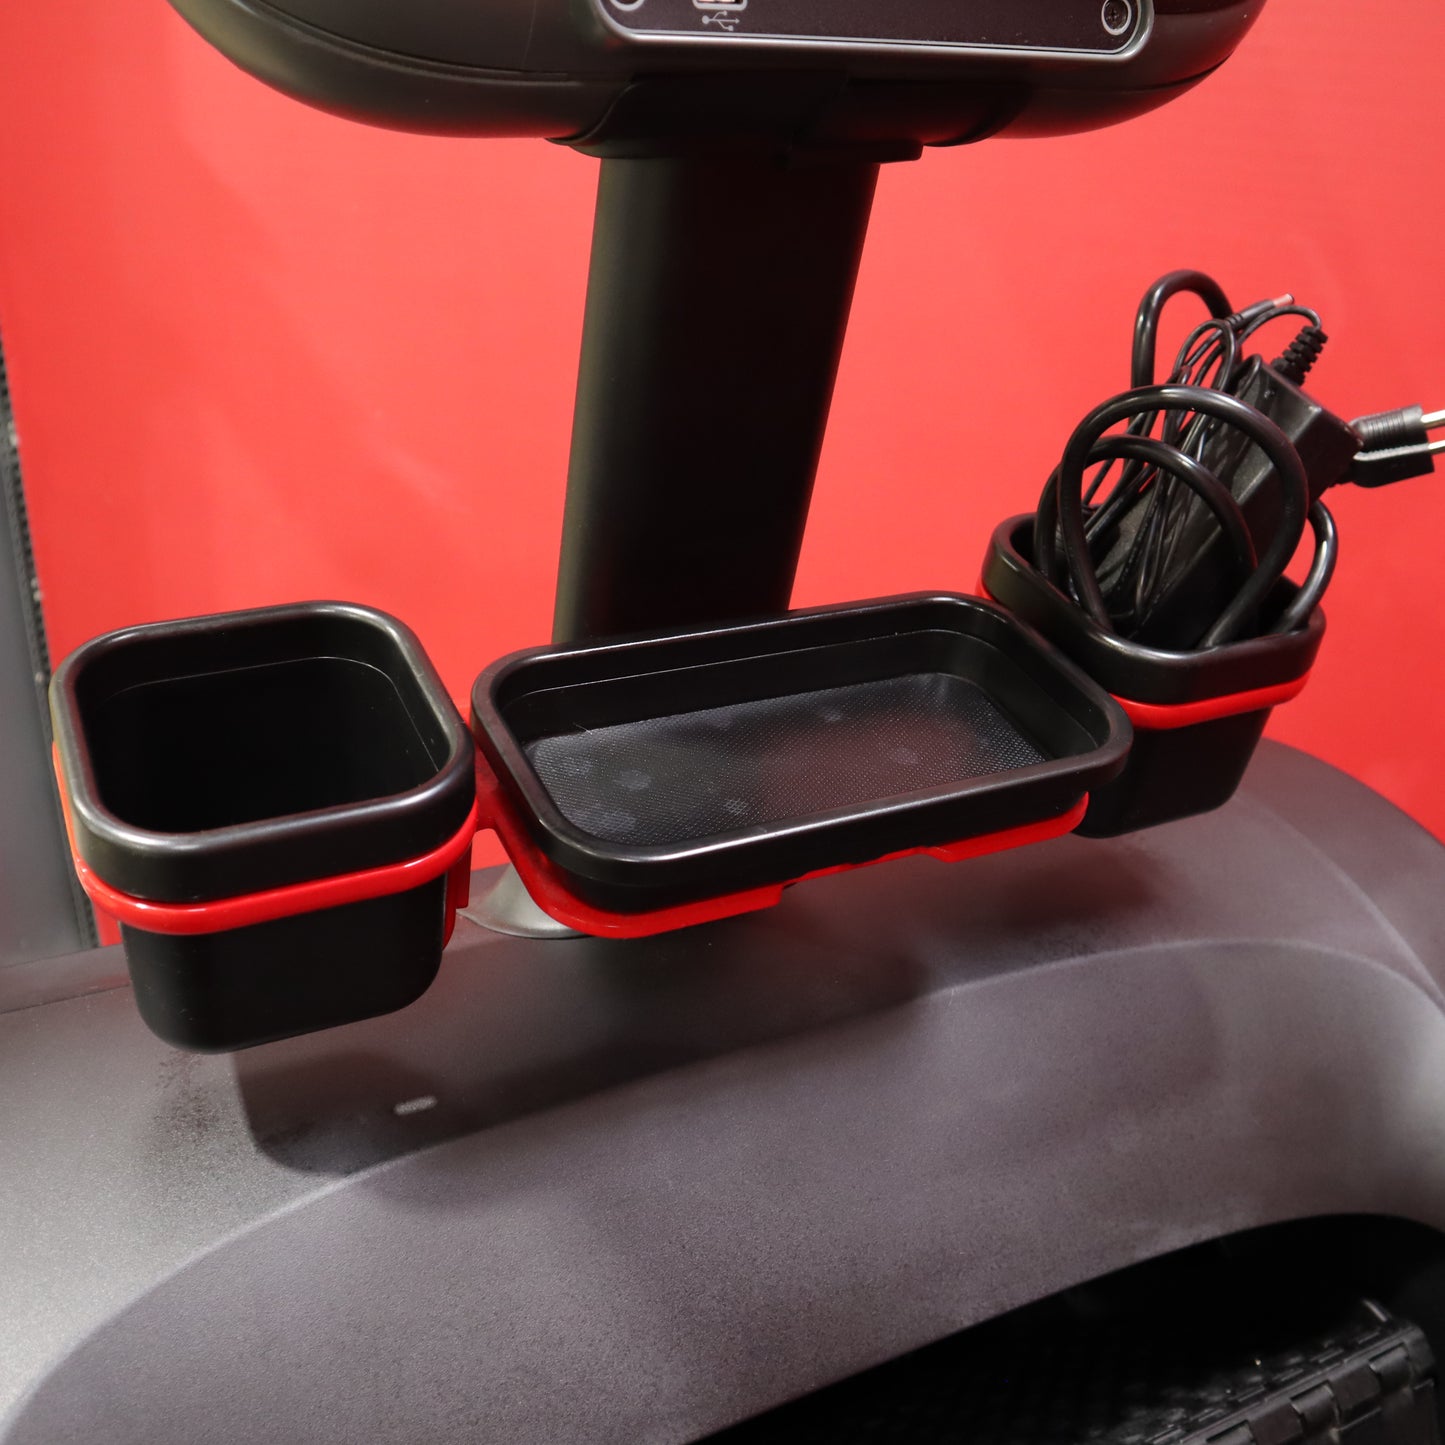 2021 StirMaster 10G Gauntlet 10 Series Stepmill con entrenamiento de sobremarcha-Consola de pantalla táctil de 10 "(reacondicionado)